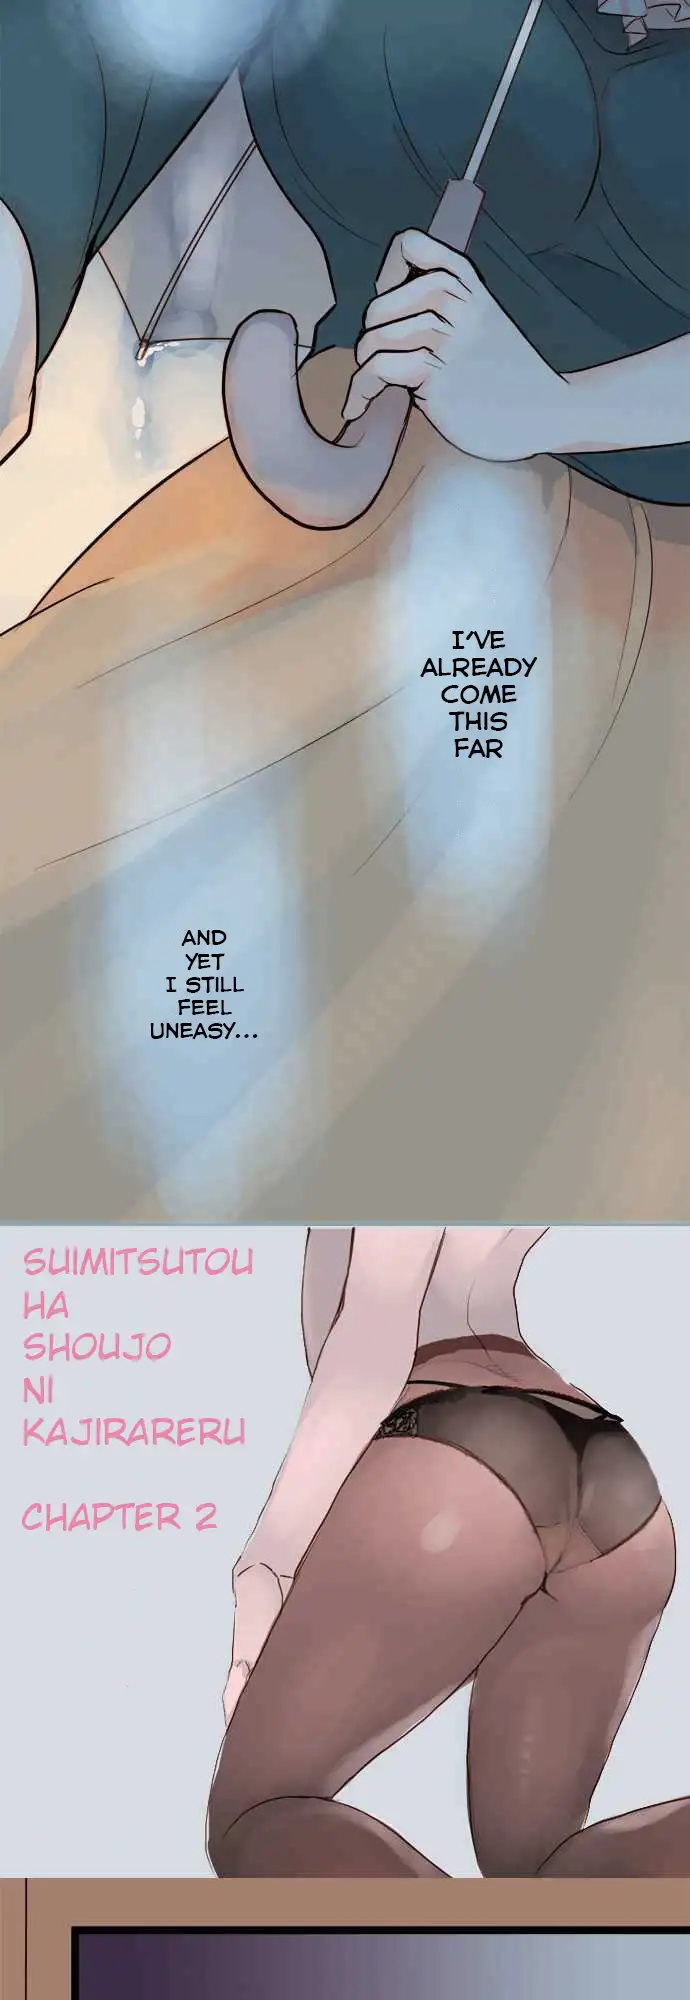 Suimittou wa Shoujo ni Kajira Reru - Chapter 2 Page 4